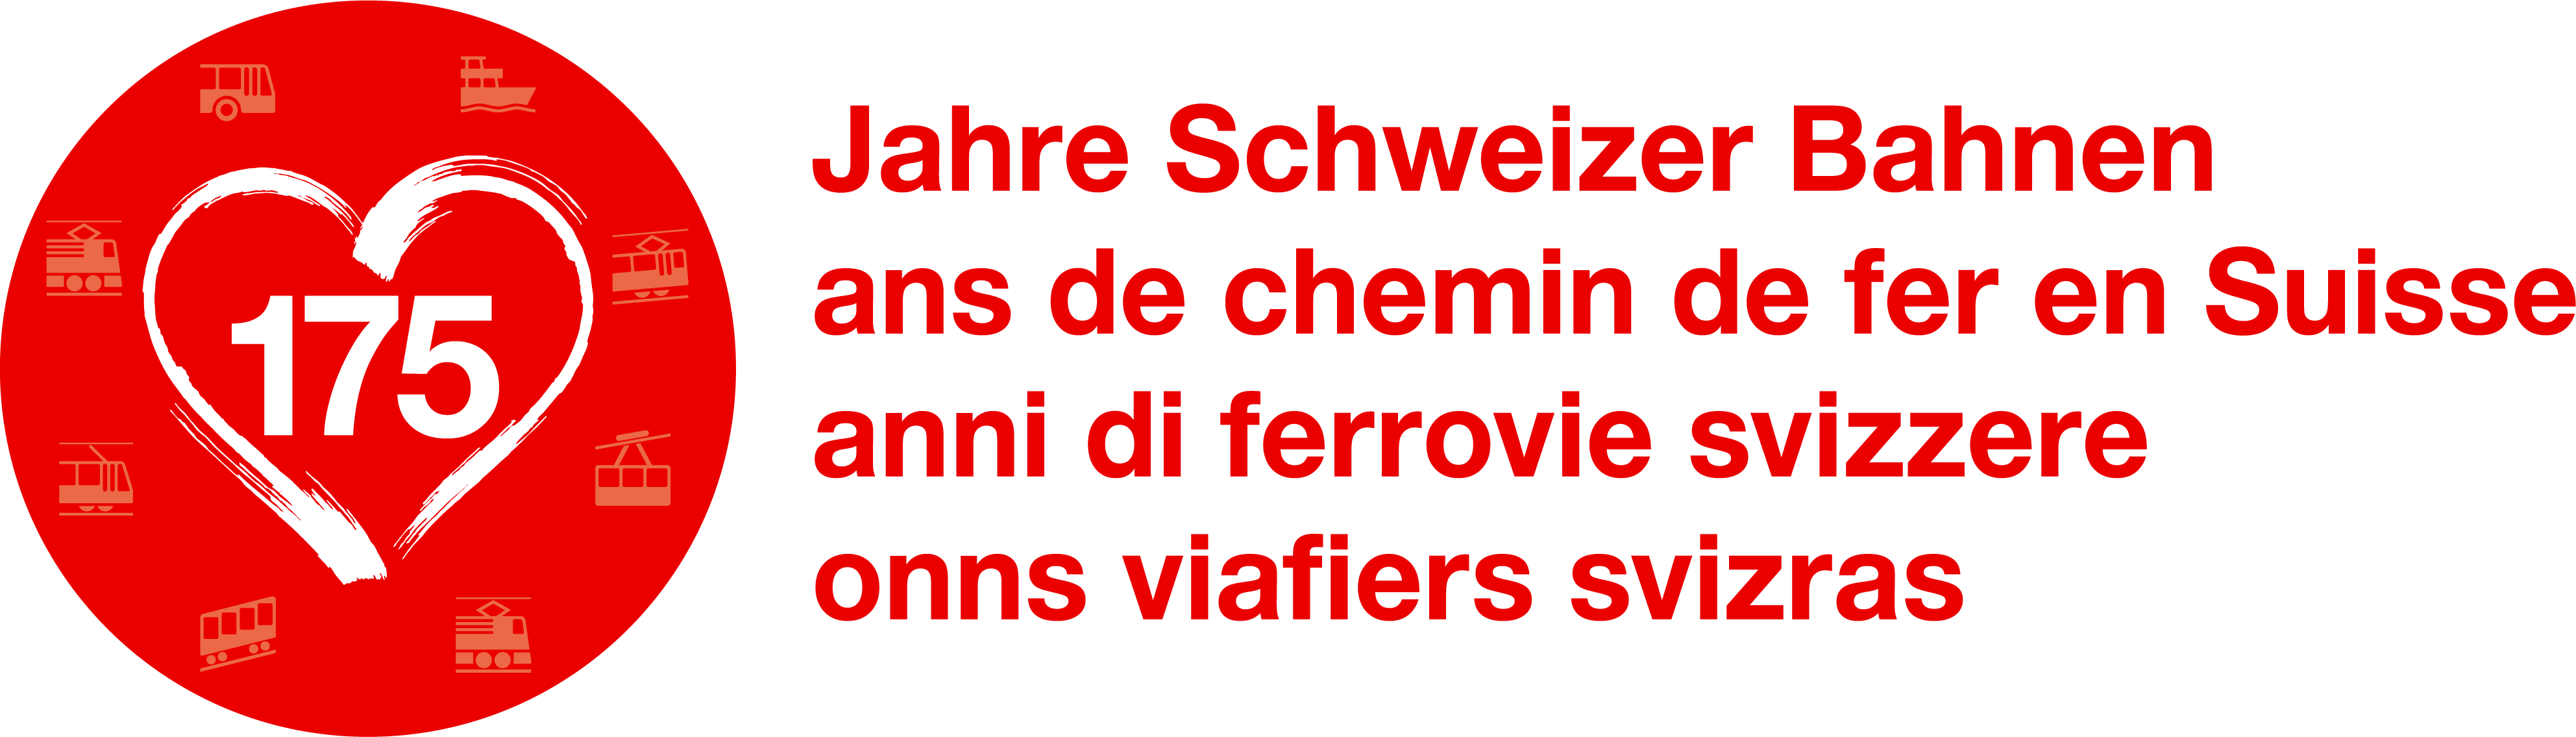 Logo 175 Jahre Schweizer Bahnen